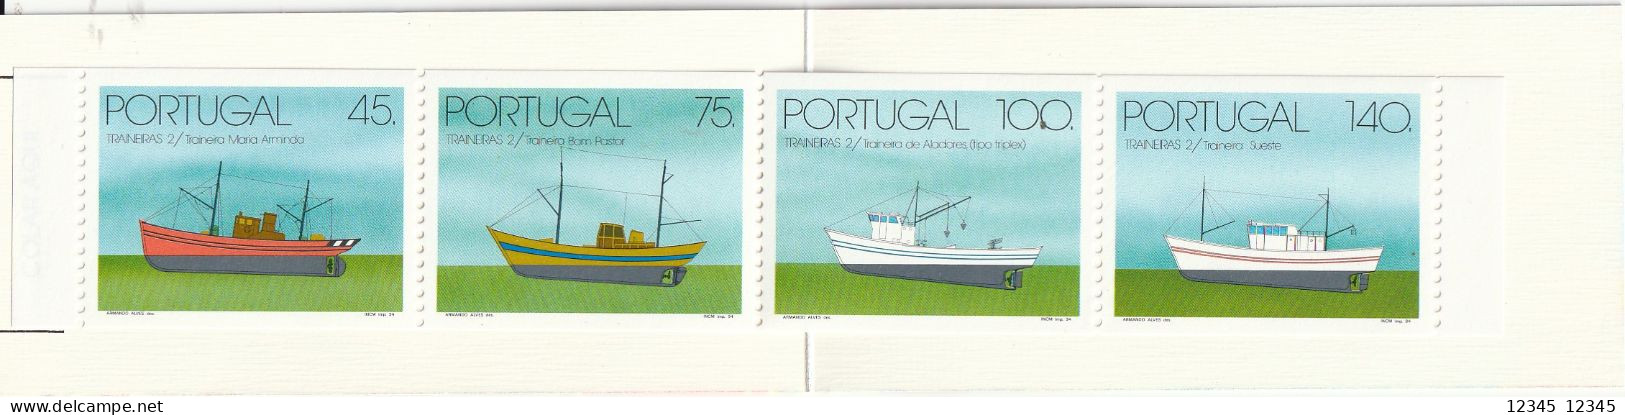 Portugal 1994, Postfris MNH, Boats - Cuadernillos